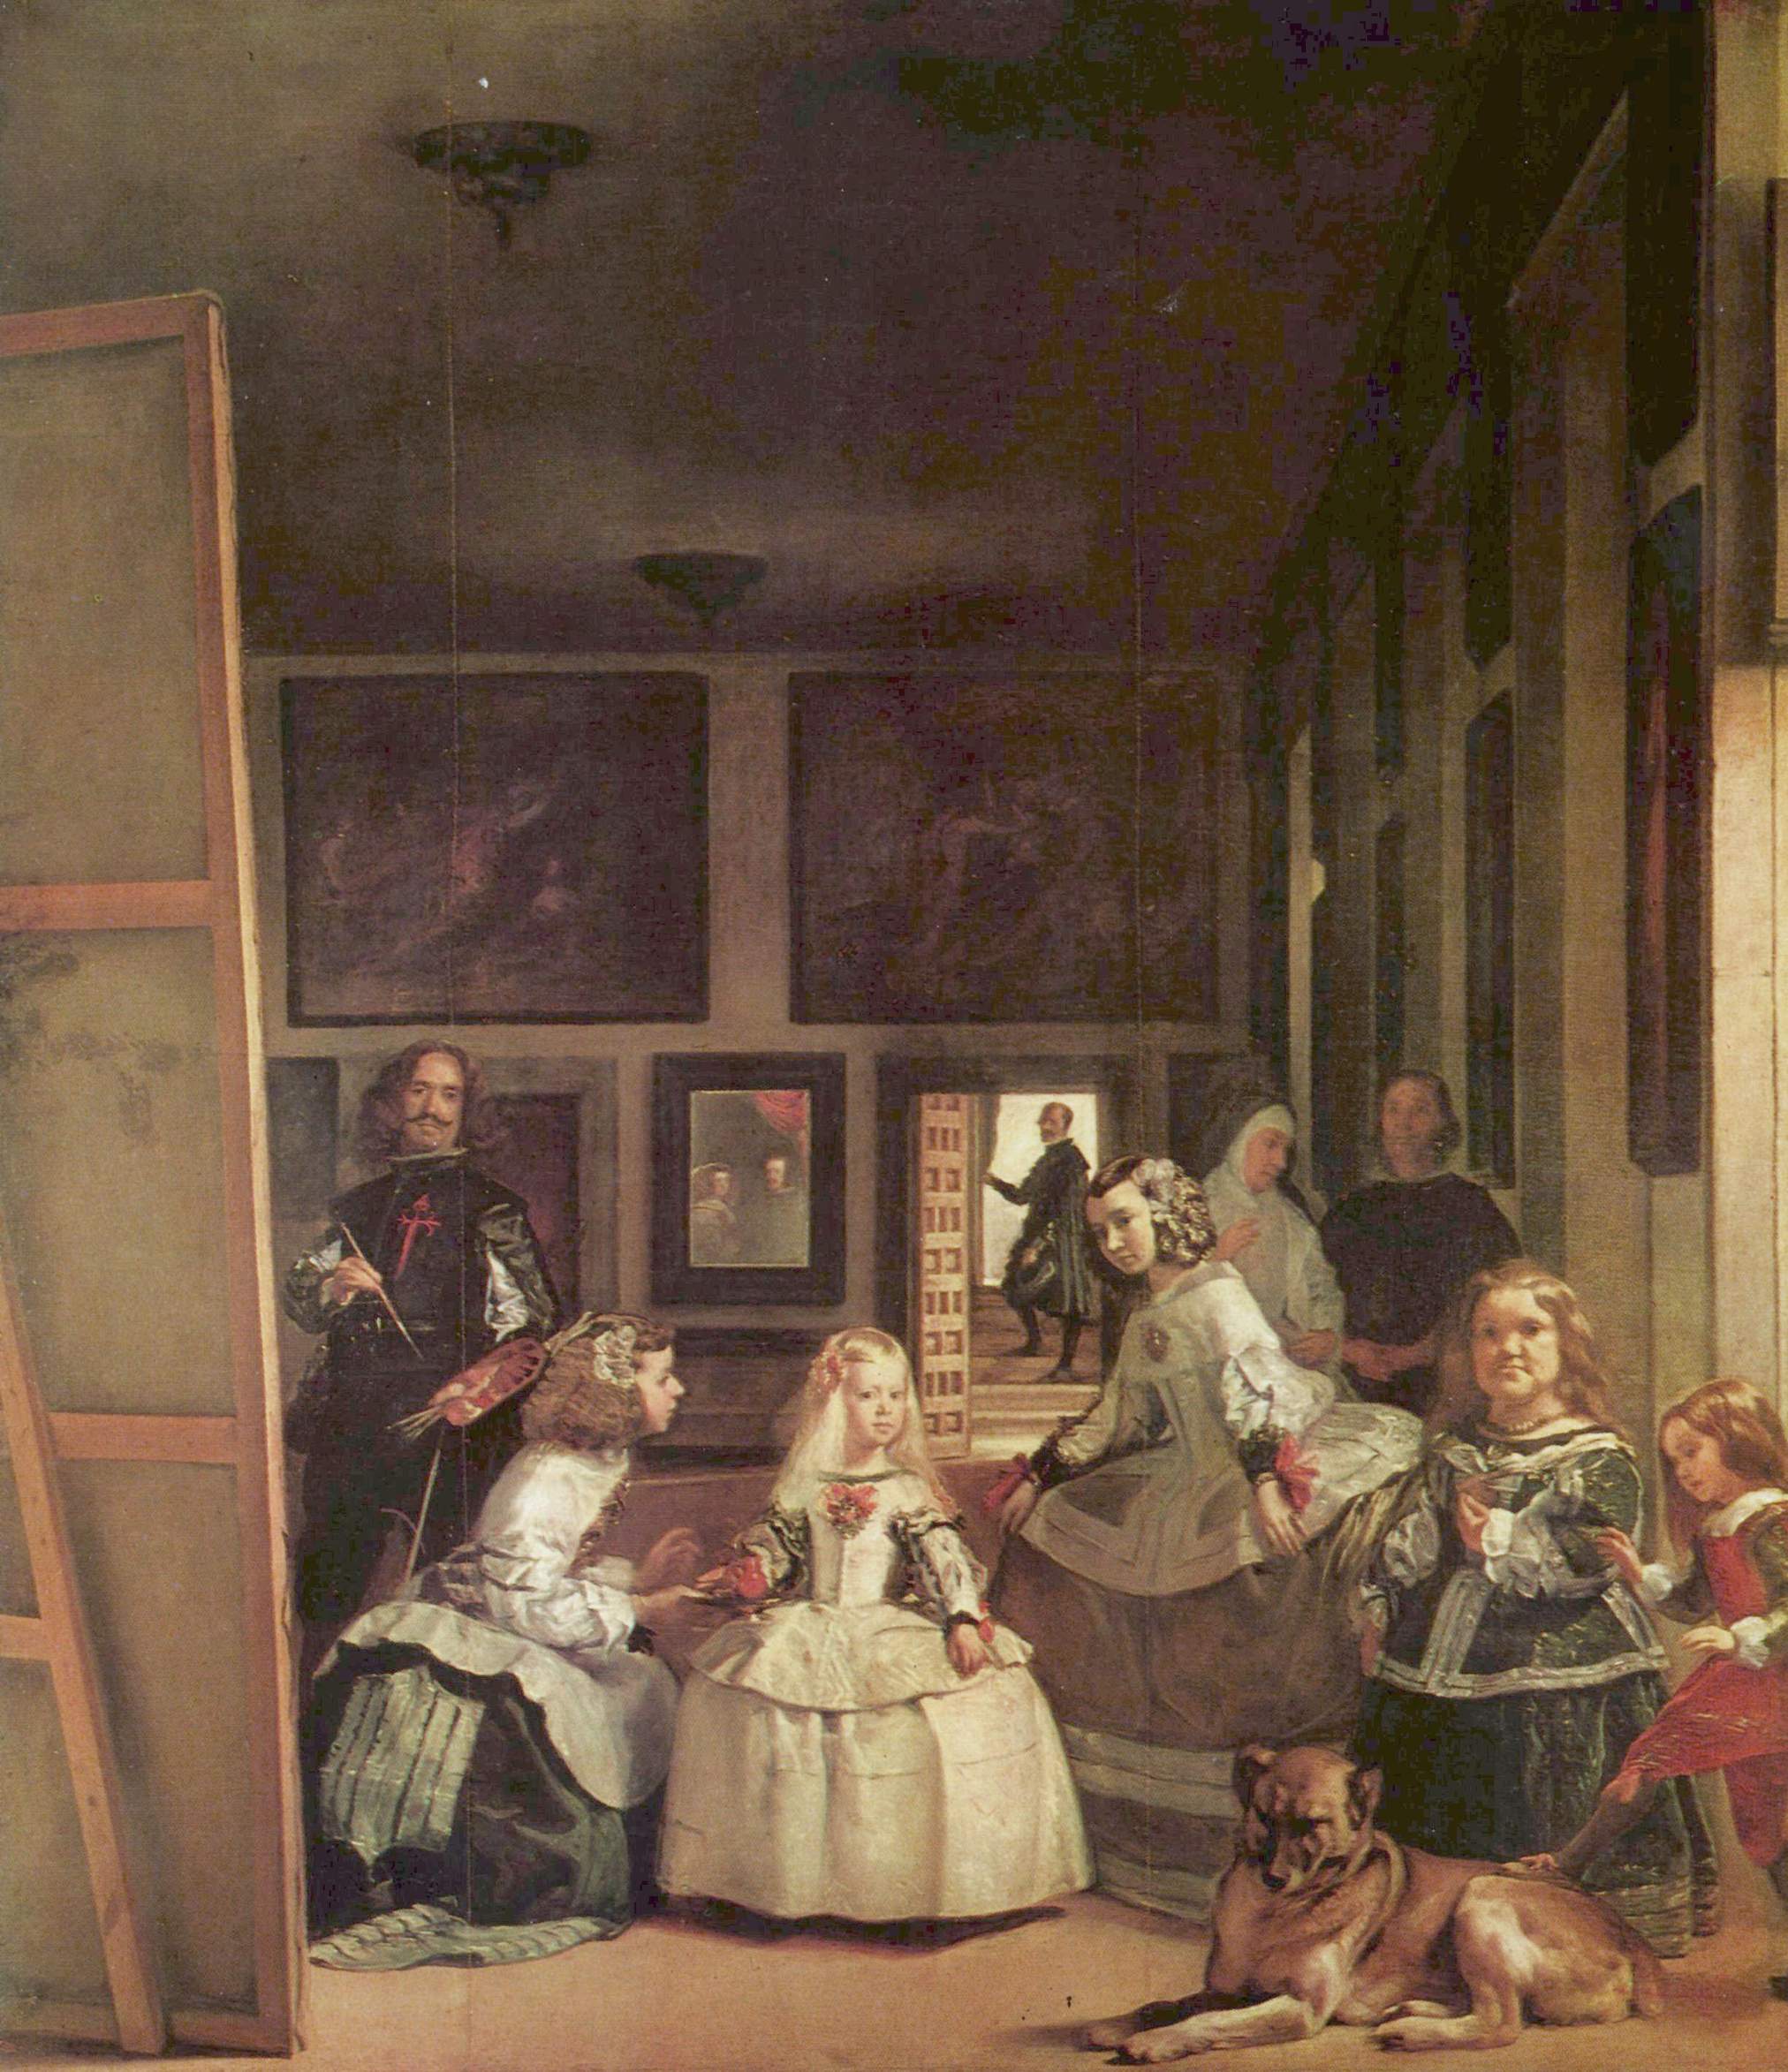 Las Meninas de Velázquez.